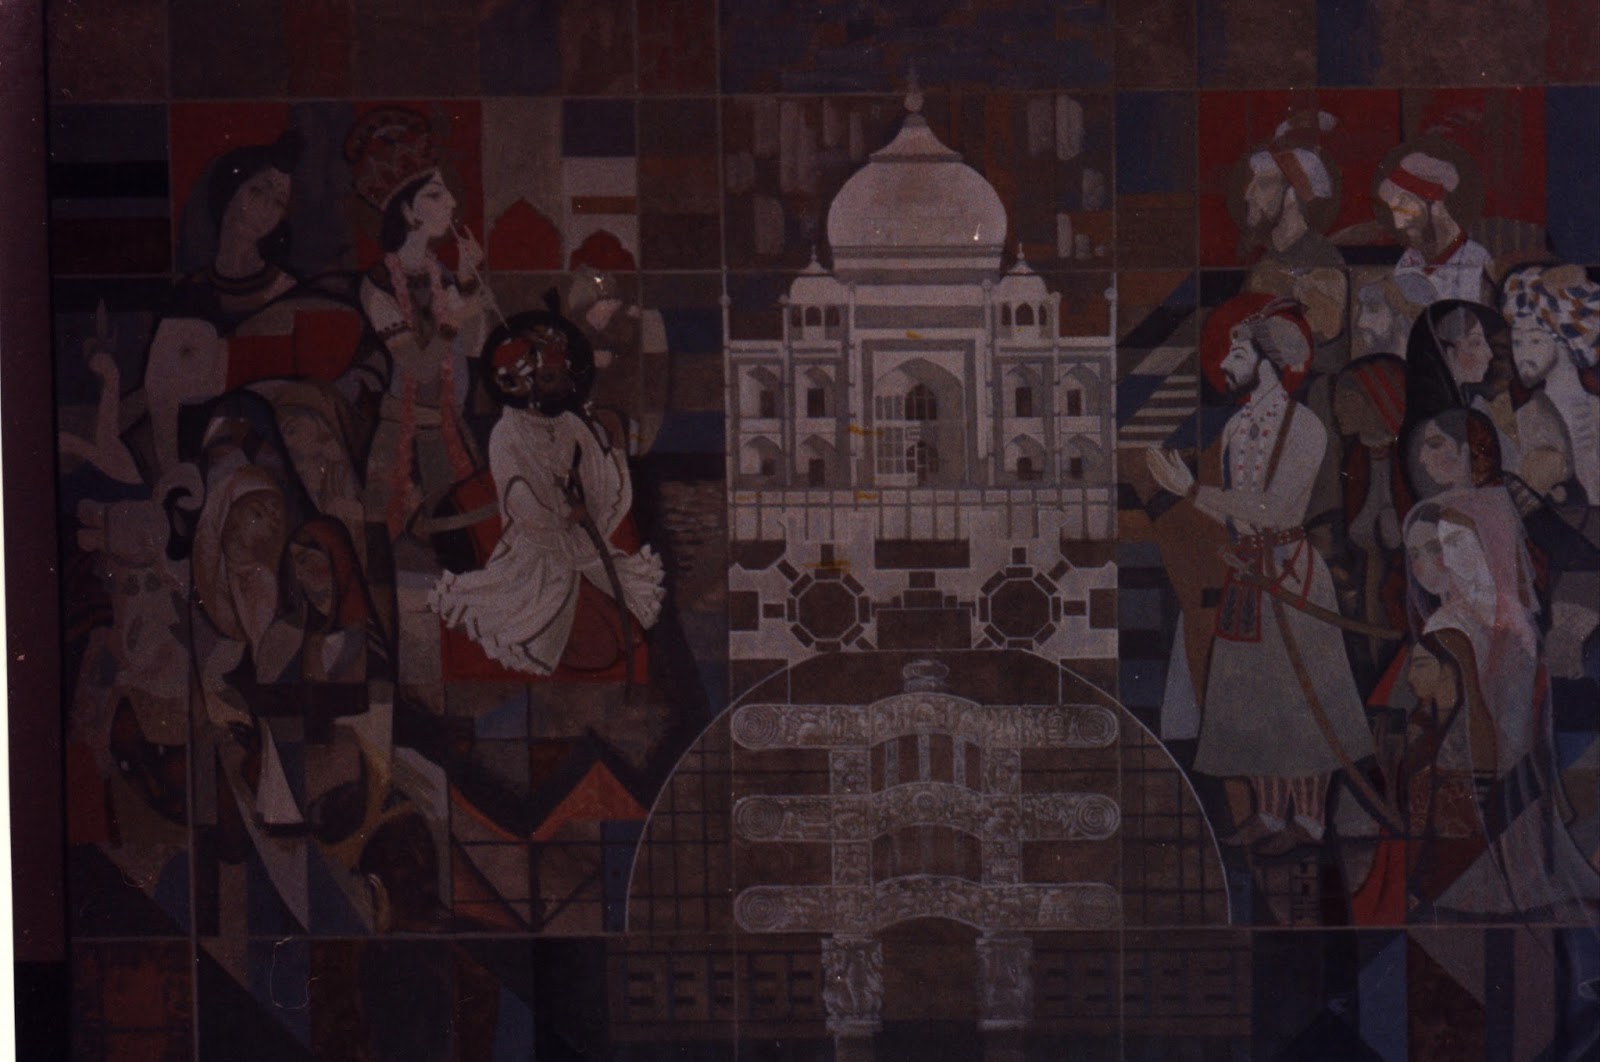 ركزت الفنون الاسلامية على فن العمارة وفن المنمنمات وفن الزخرفة والخط.